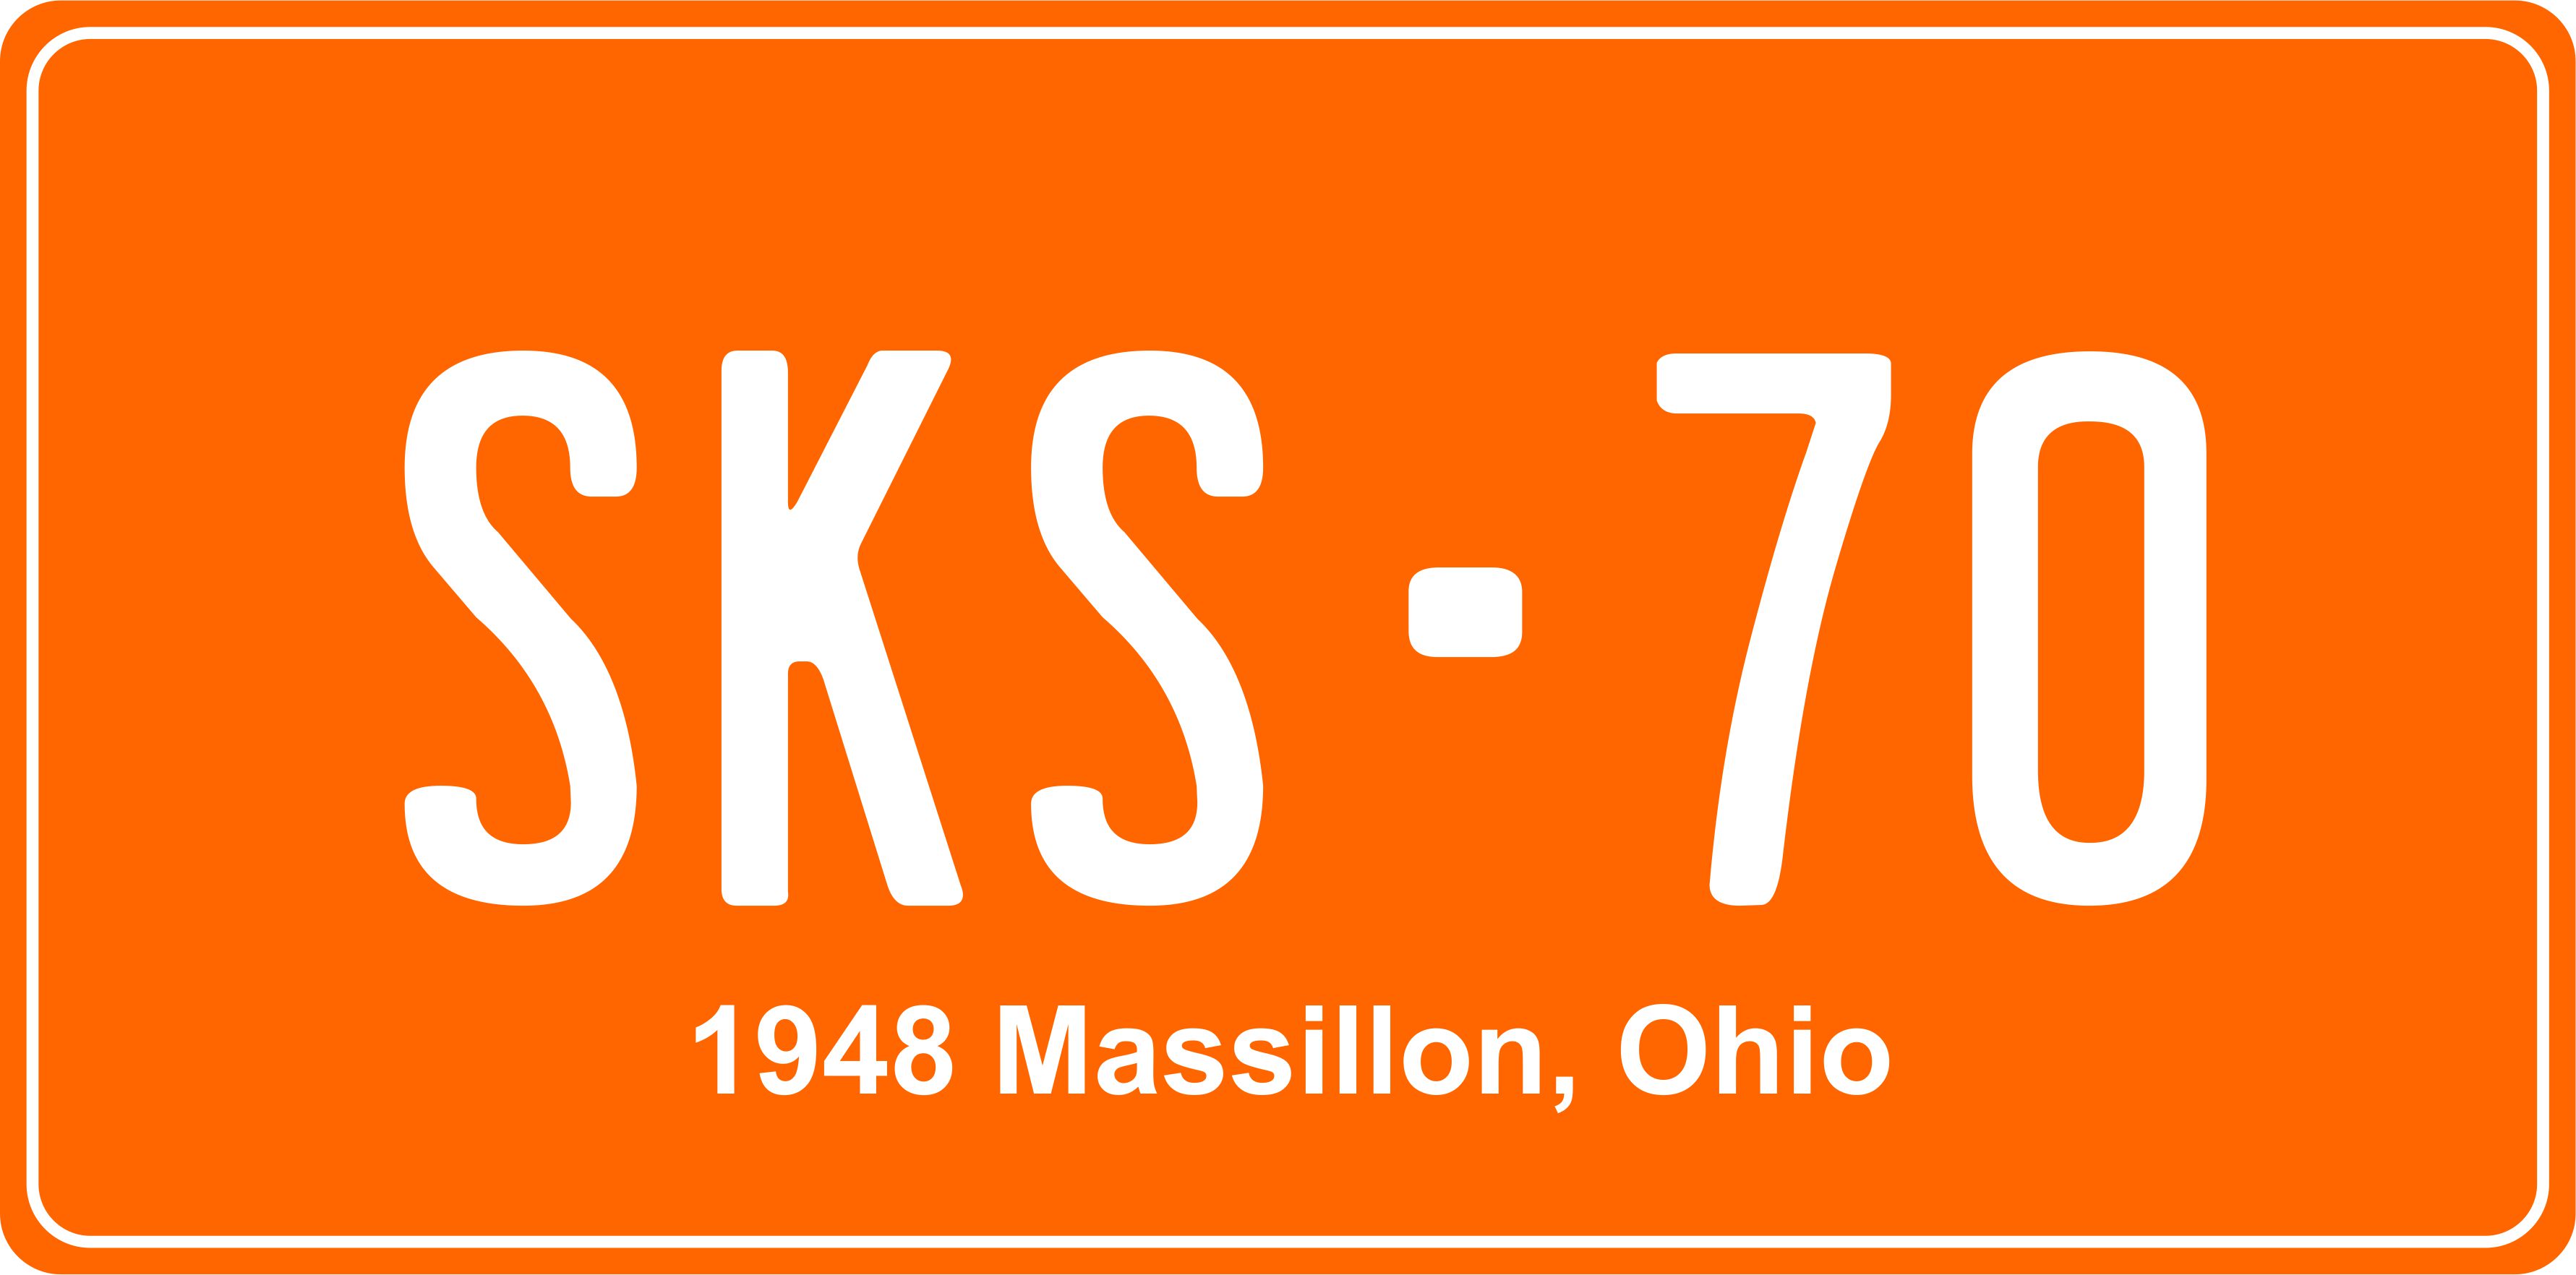 1948 Massillon, Ohio - Decorative License Plates